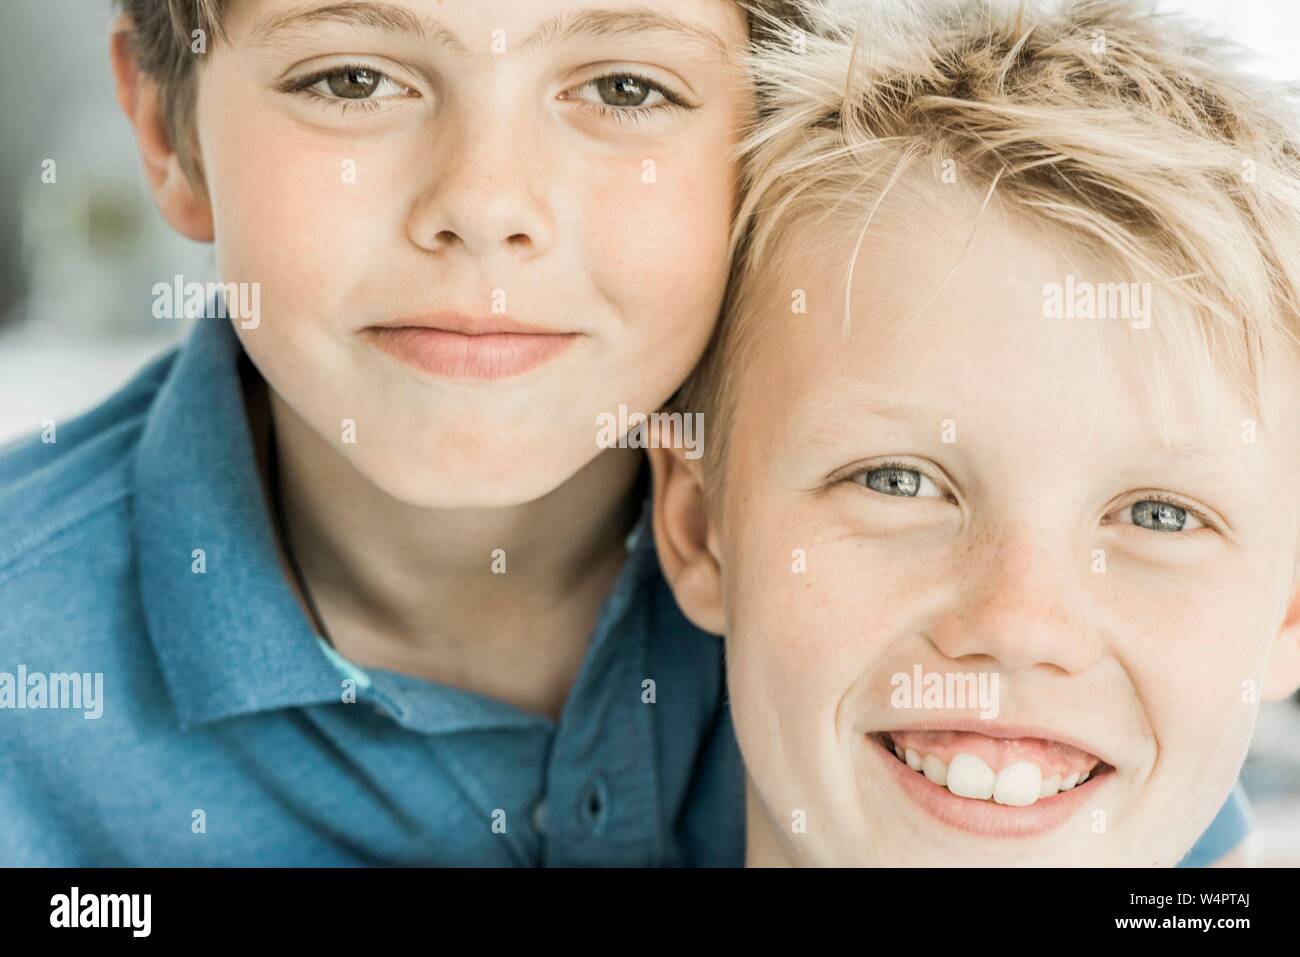 Deux gars, amis, 10 ans, à la recherche dans l'appareil photo, portraits, souriant et cool, Allemagne Banque D'Images